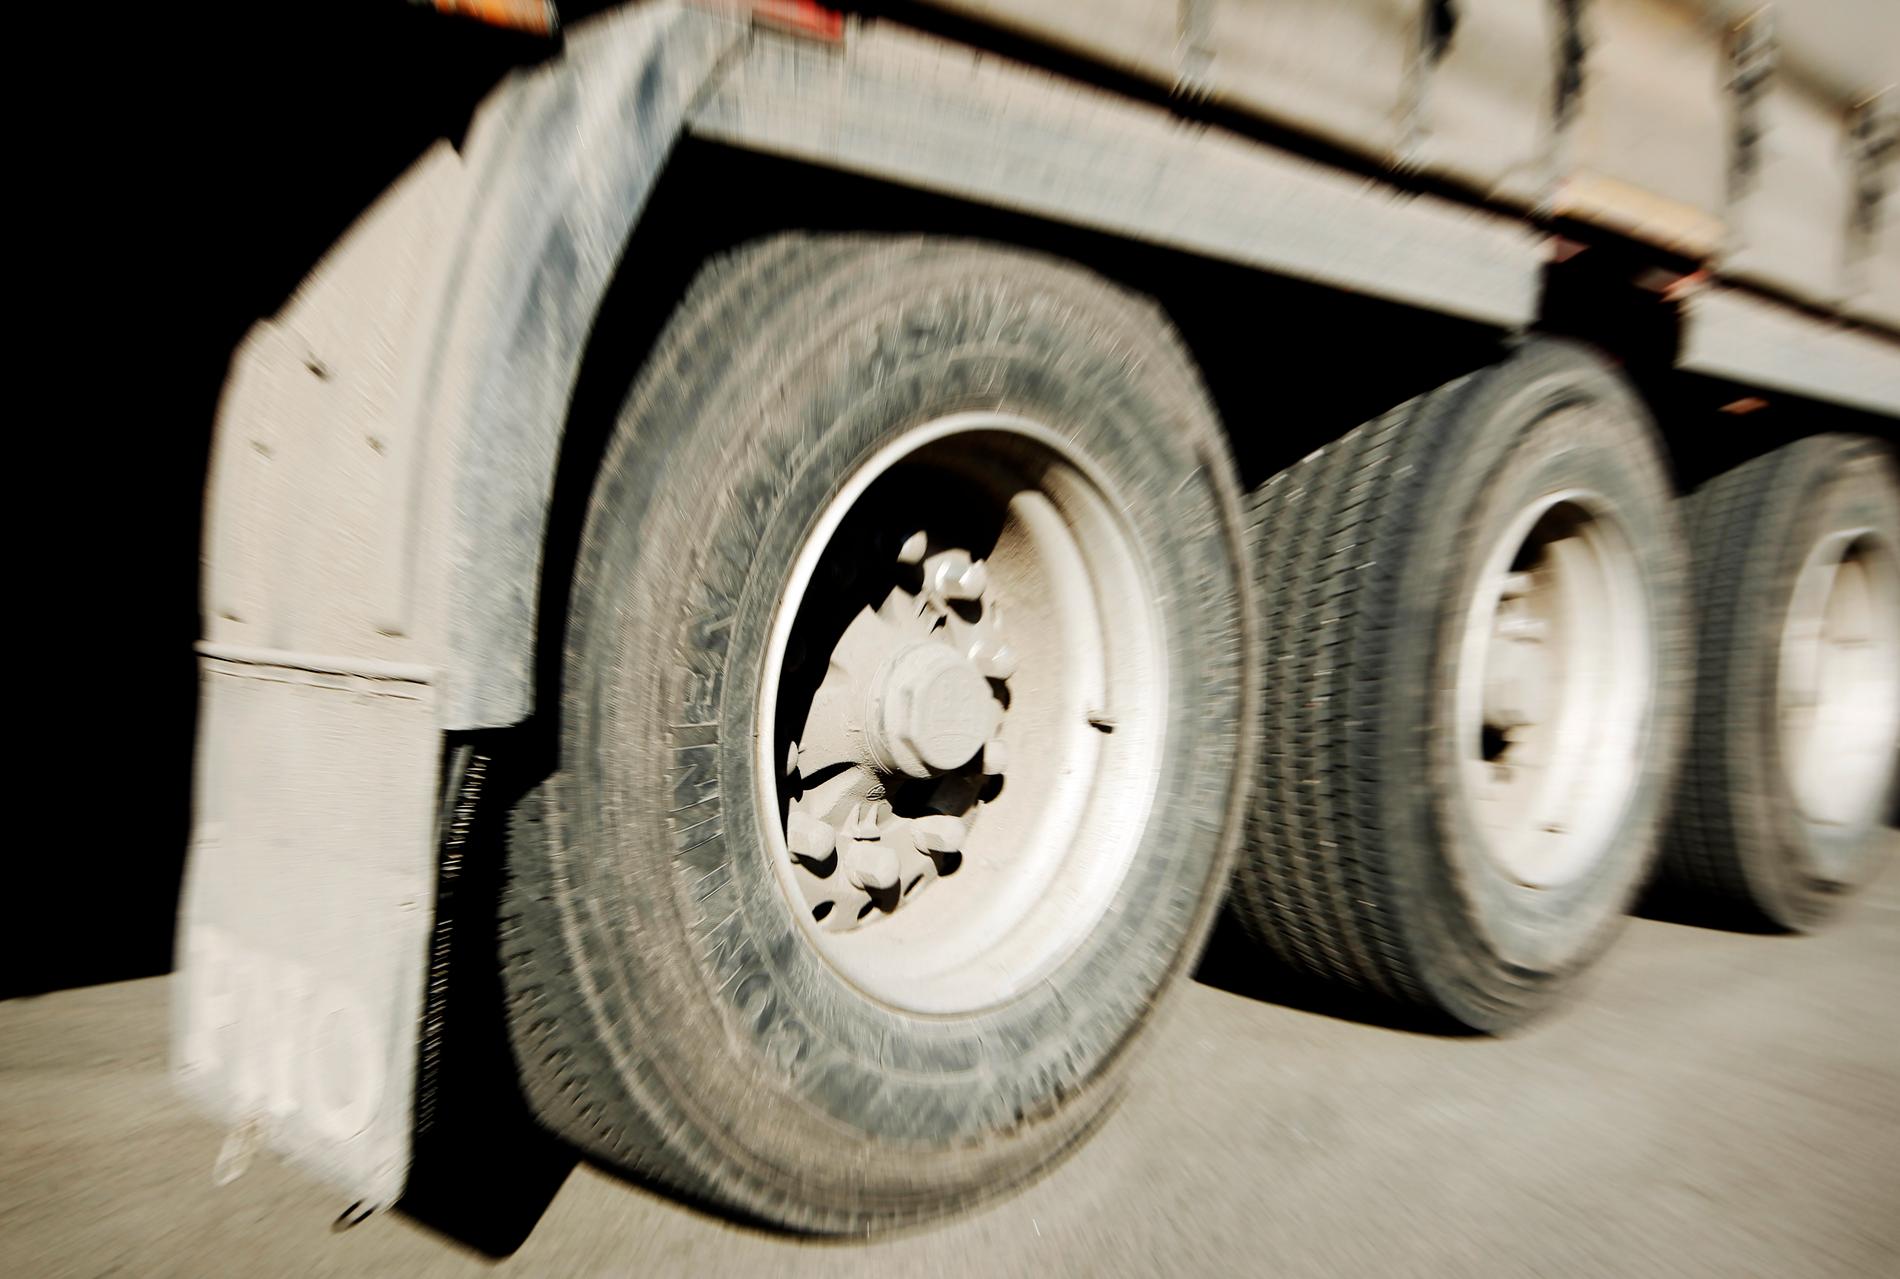 Transportstyrelsen ska utreda hur en tung lastbil kunde skena längs E20 utan att föraren kunde bromsa. Arkivbild.